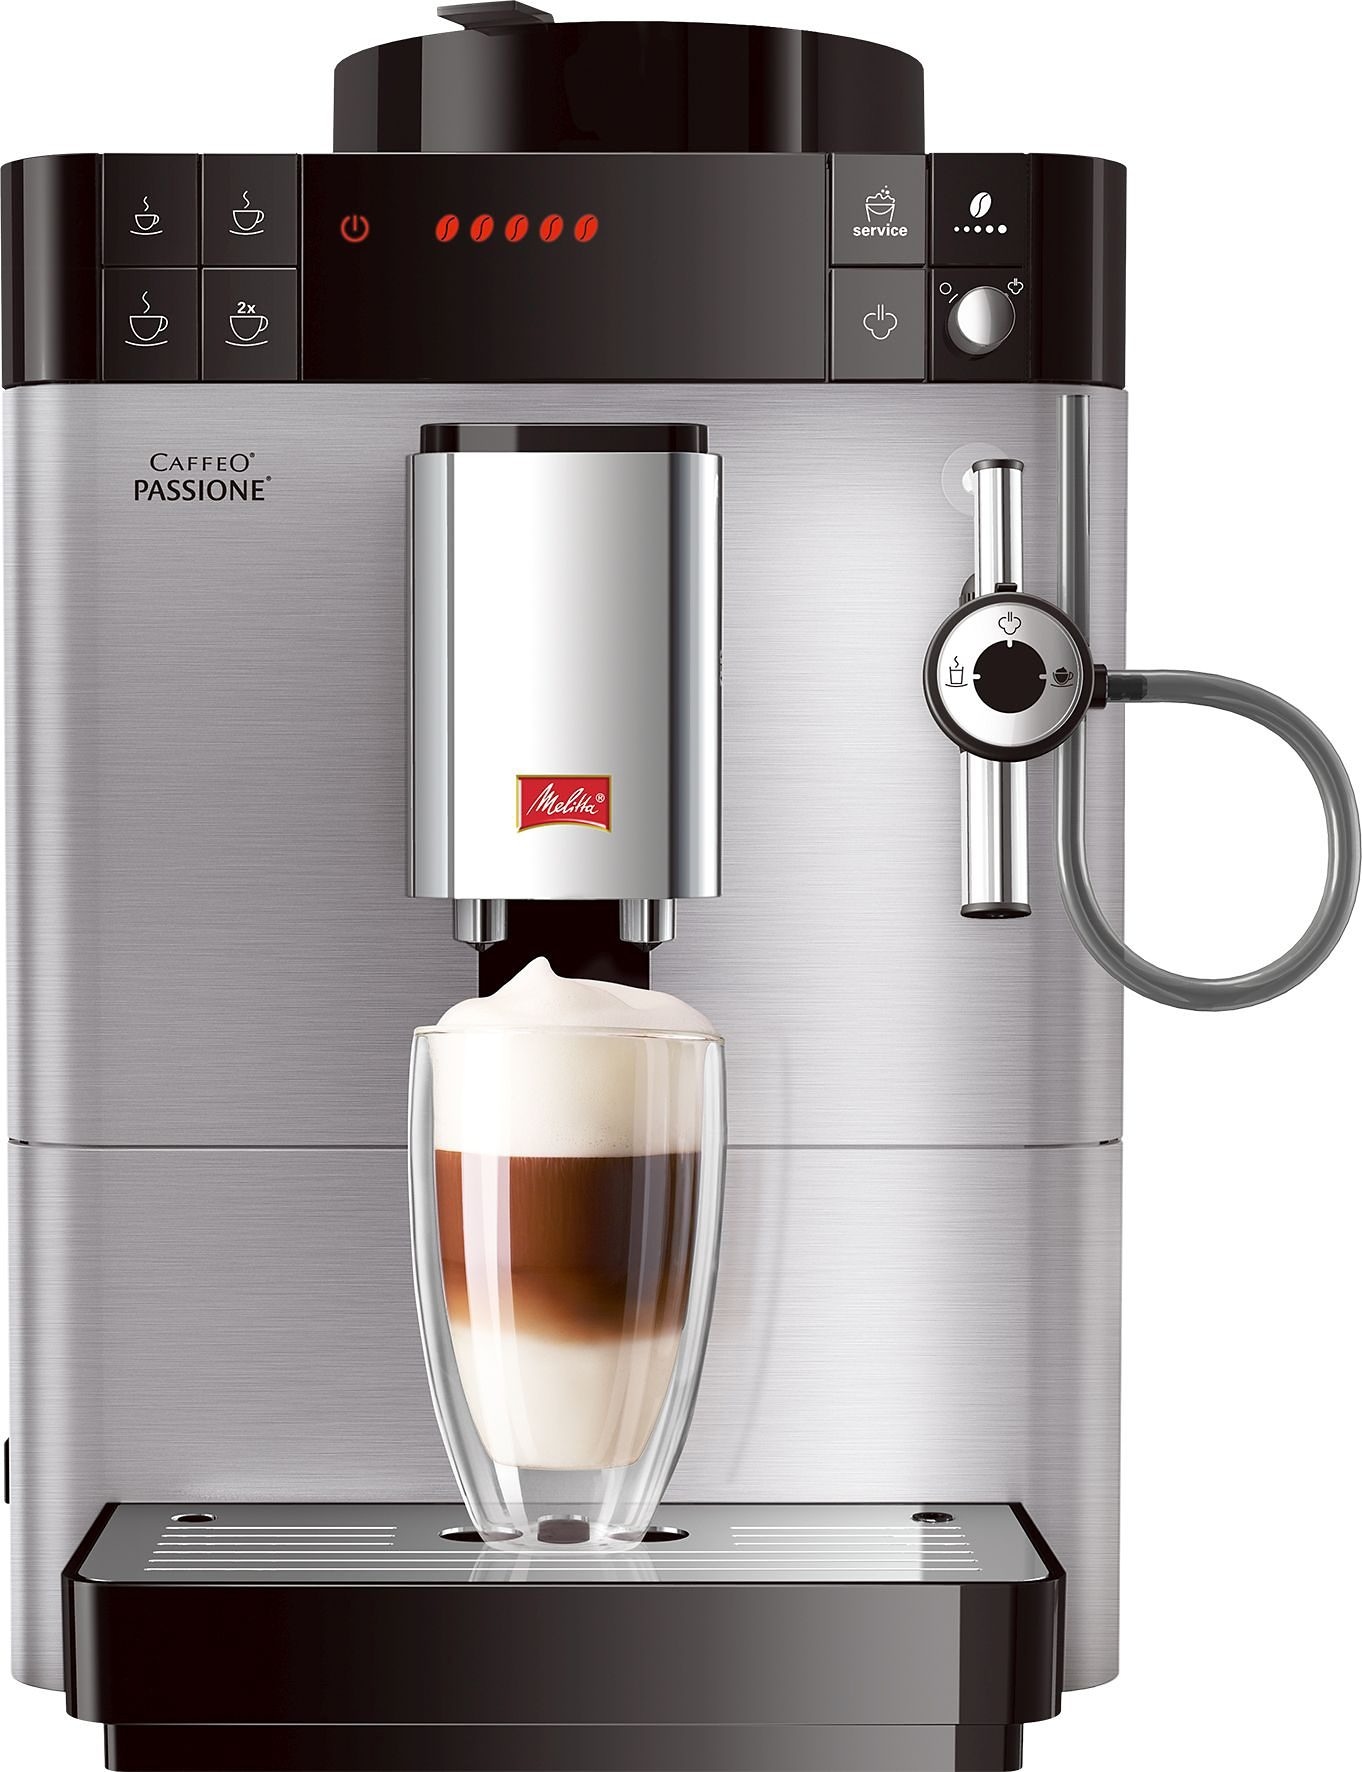 frisch Moderne 3 Garantie gemahlene Kaffeevollautomat Edelstahl«, Bohnen Jahren F54/0-100, Edelstahl-Front, tassengenau Melitta XXL mit »Passione®